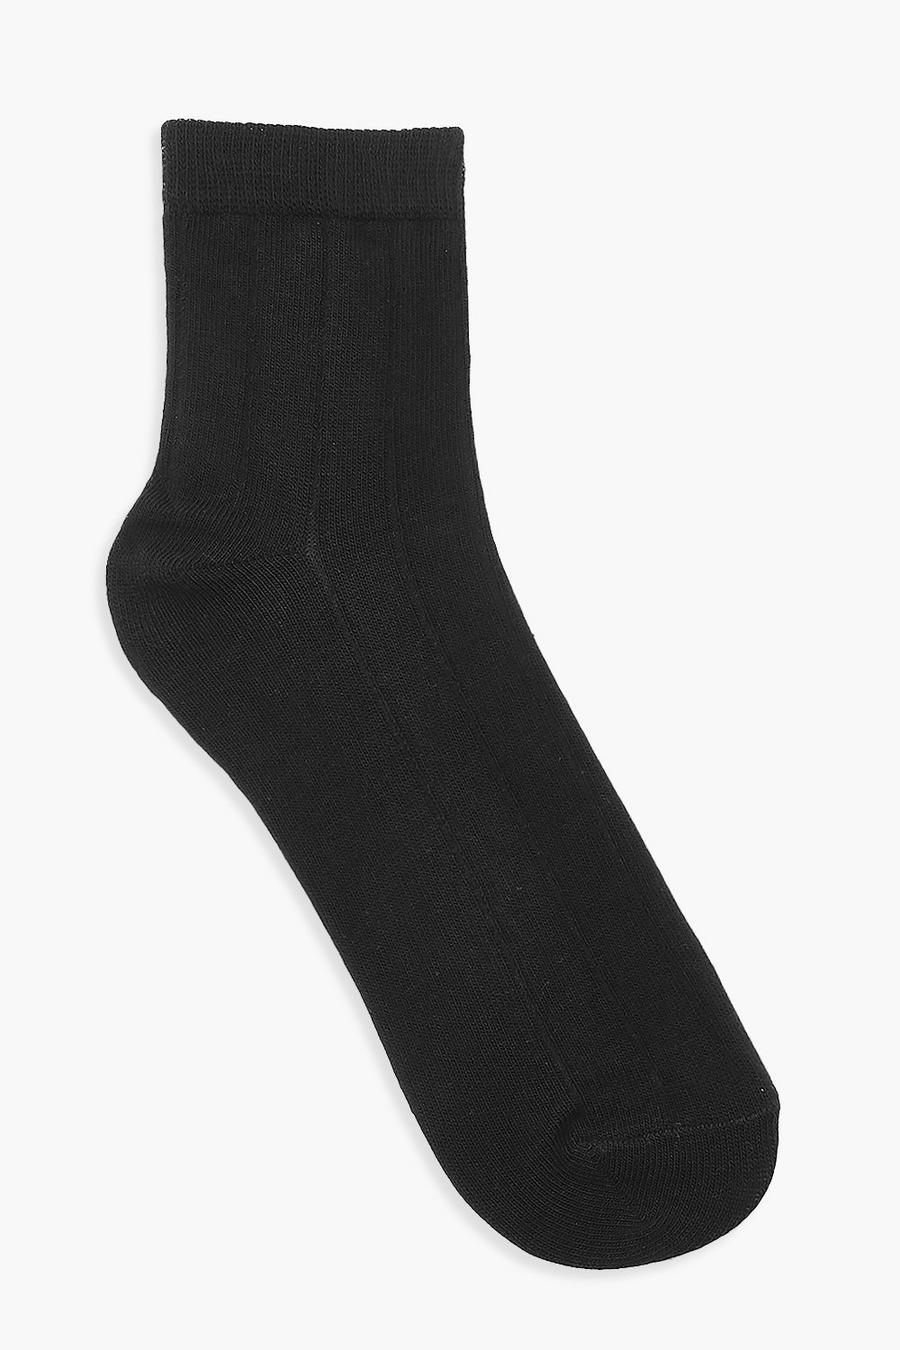 Black Wide Rib Socks image number 1